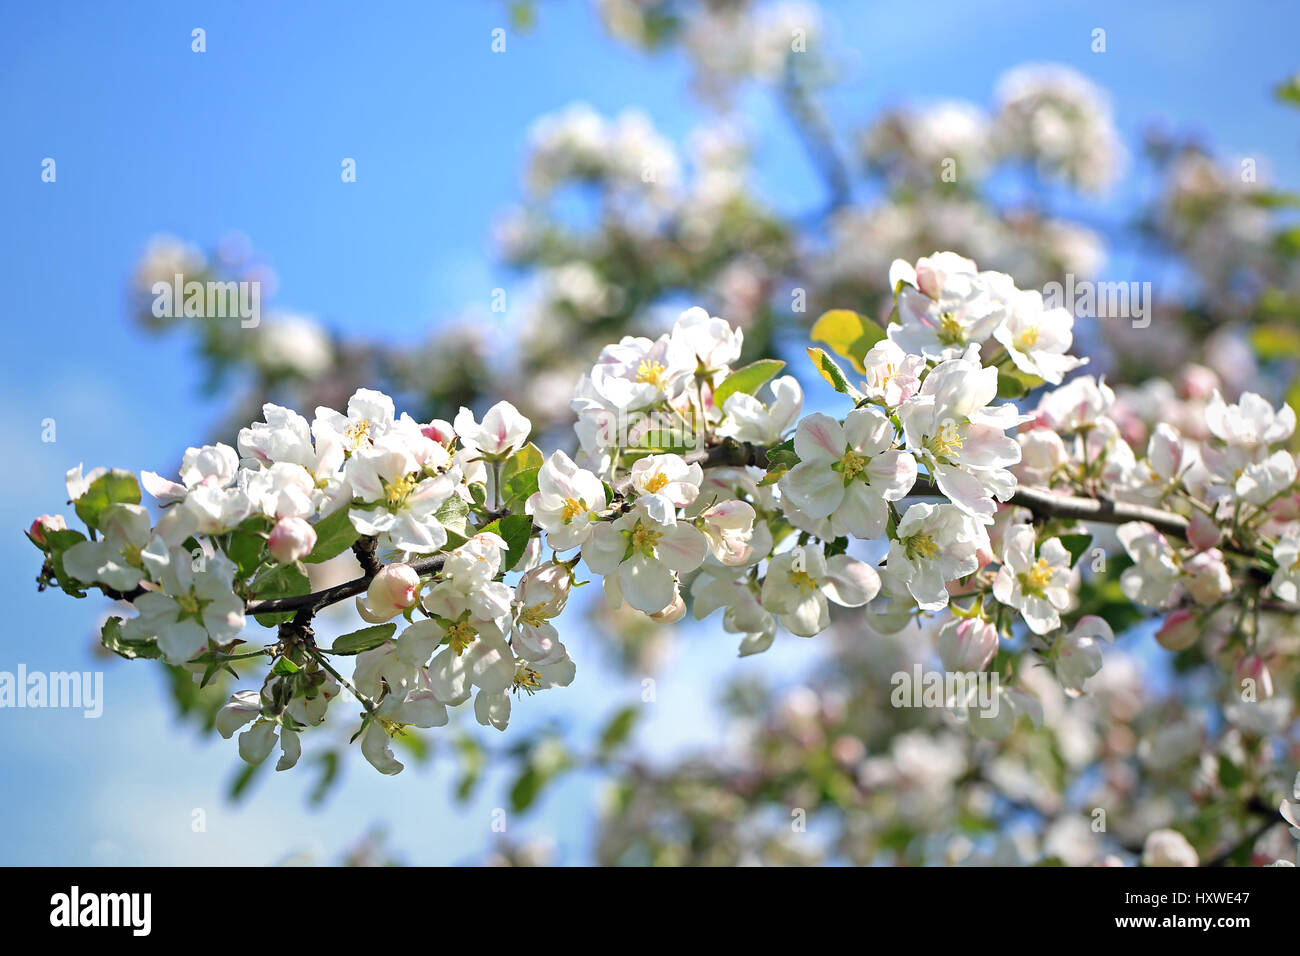 Sonnenlicht auf die weißen Blüten von einem blühenden Baum Apfelzweig gegen blauen Himmel im Frühjahr. Stockfoto